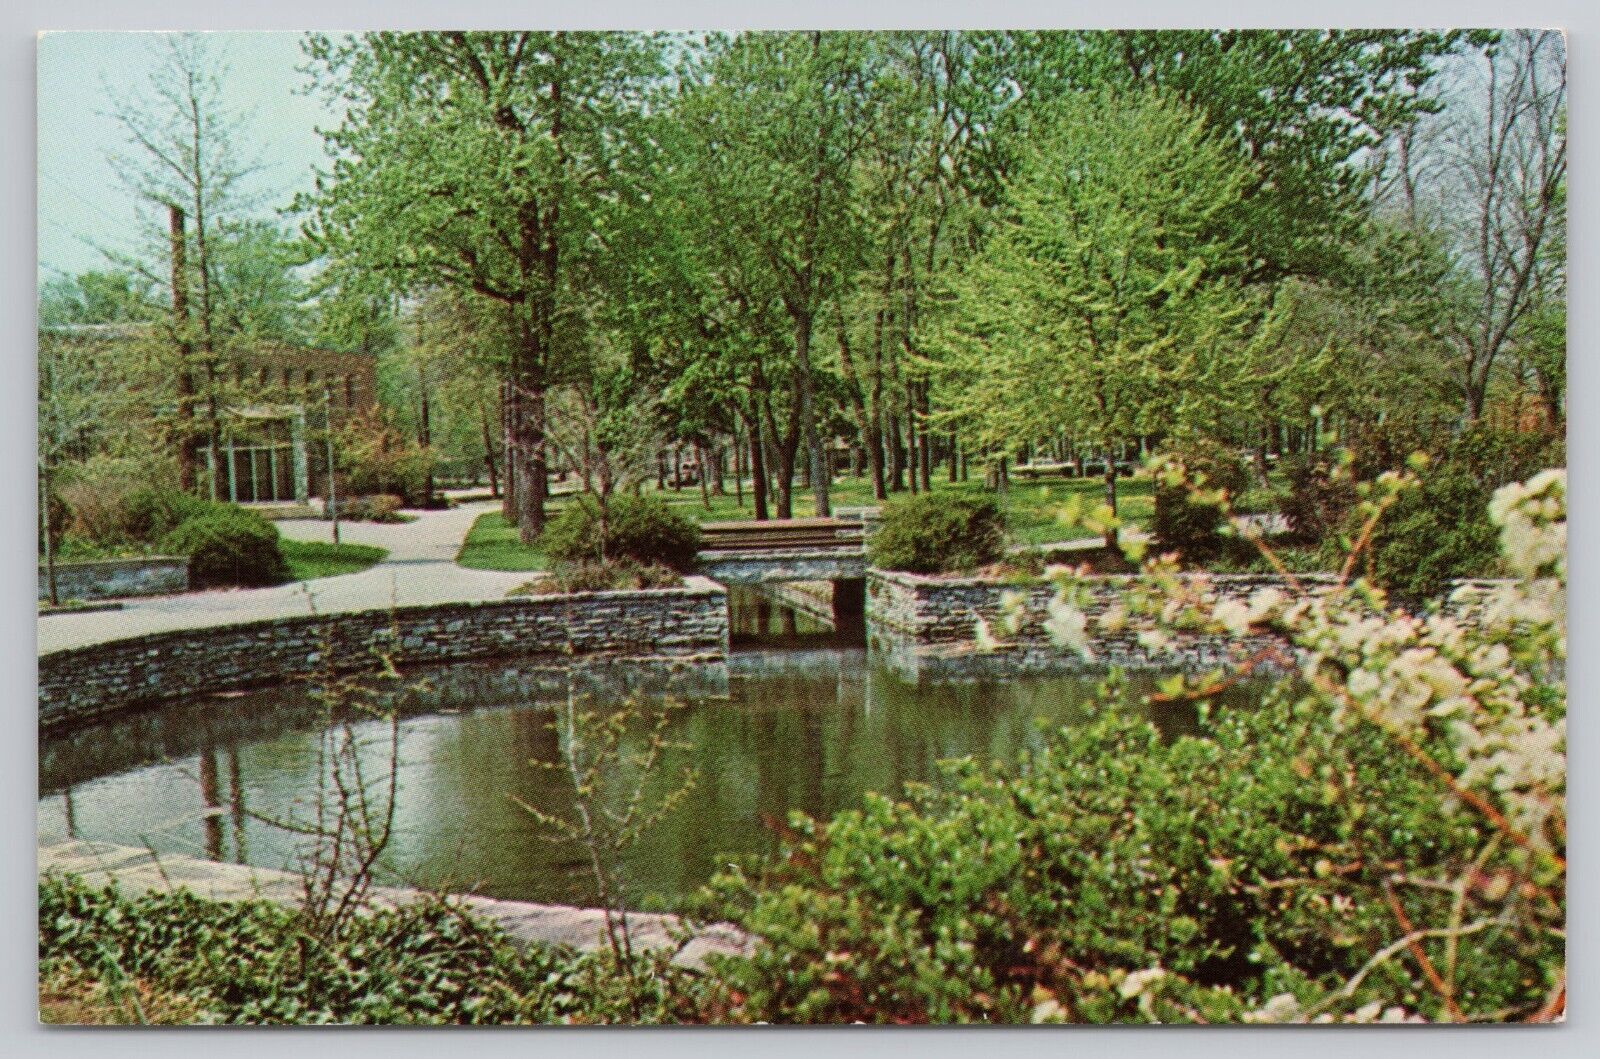 Lititz Pennsylvania, Lititz Spring Park, Vintage Postcard